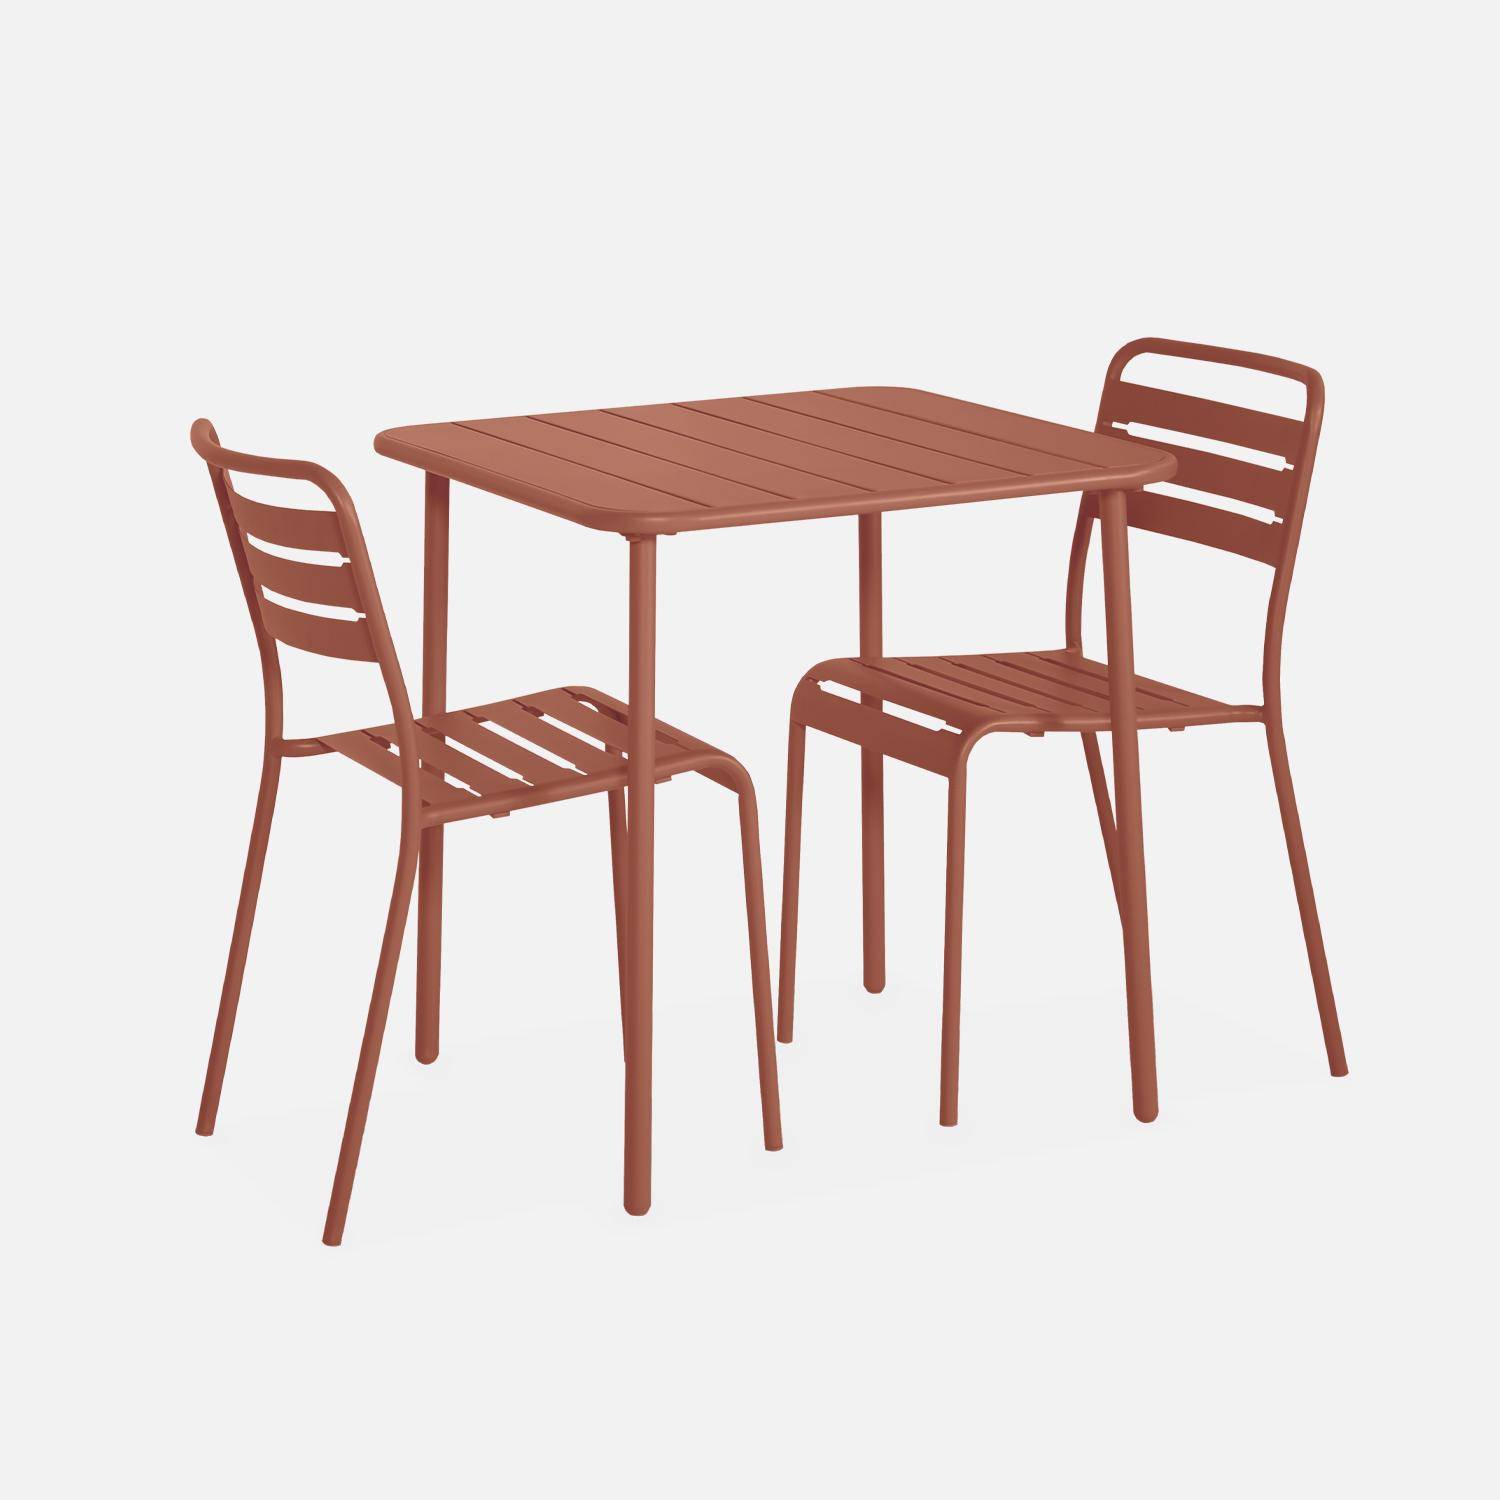 Amélia terracotta metalen tuintafel met 2 stoelen, latten en afgeronde hoeken, roestbestendige afwerking Photo4